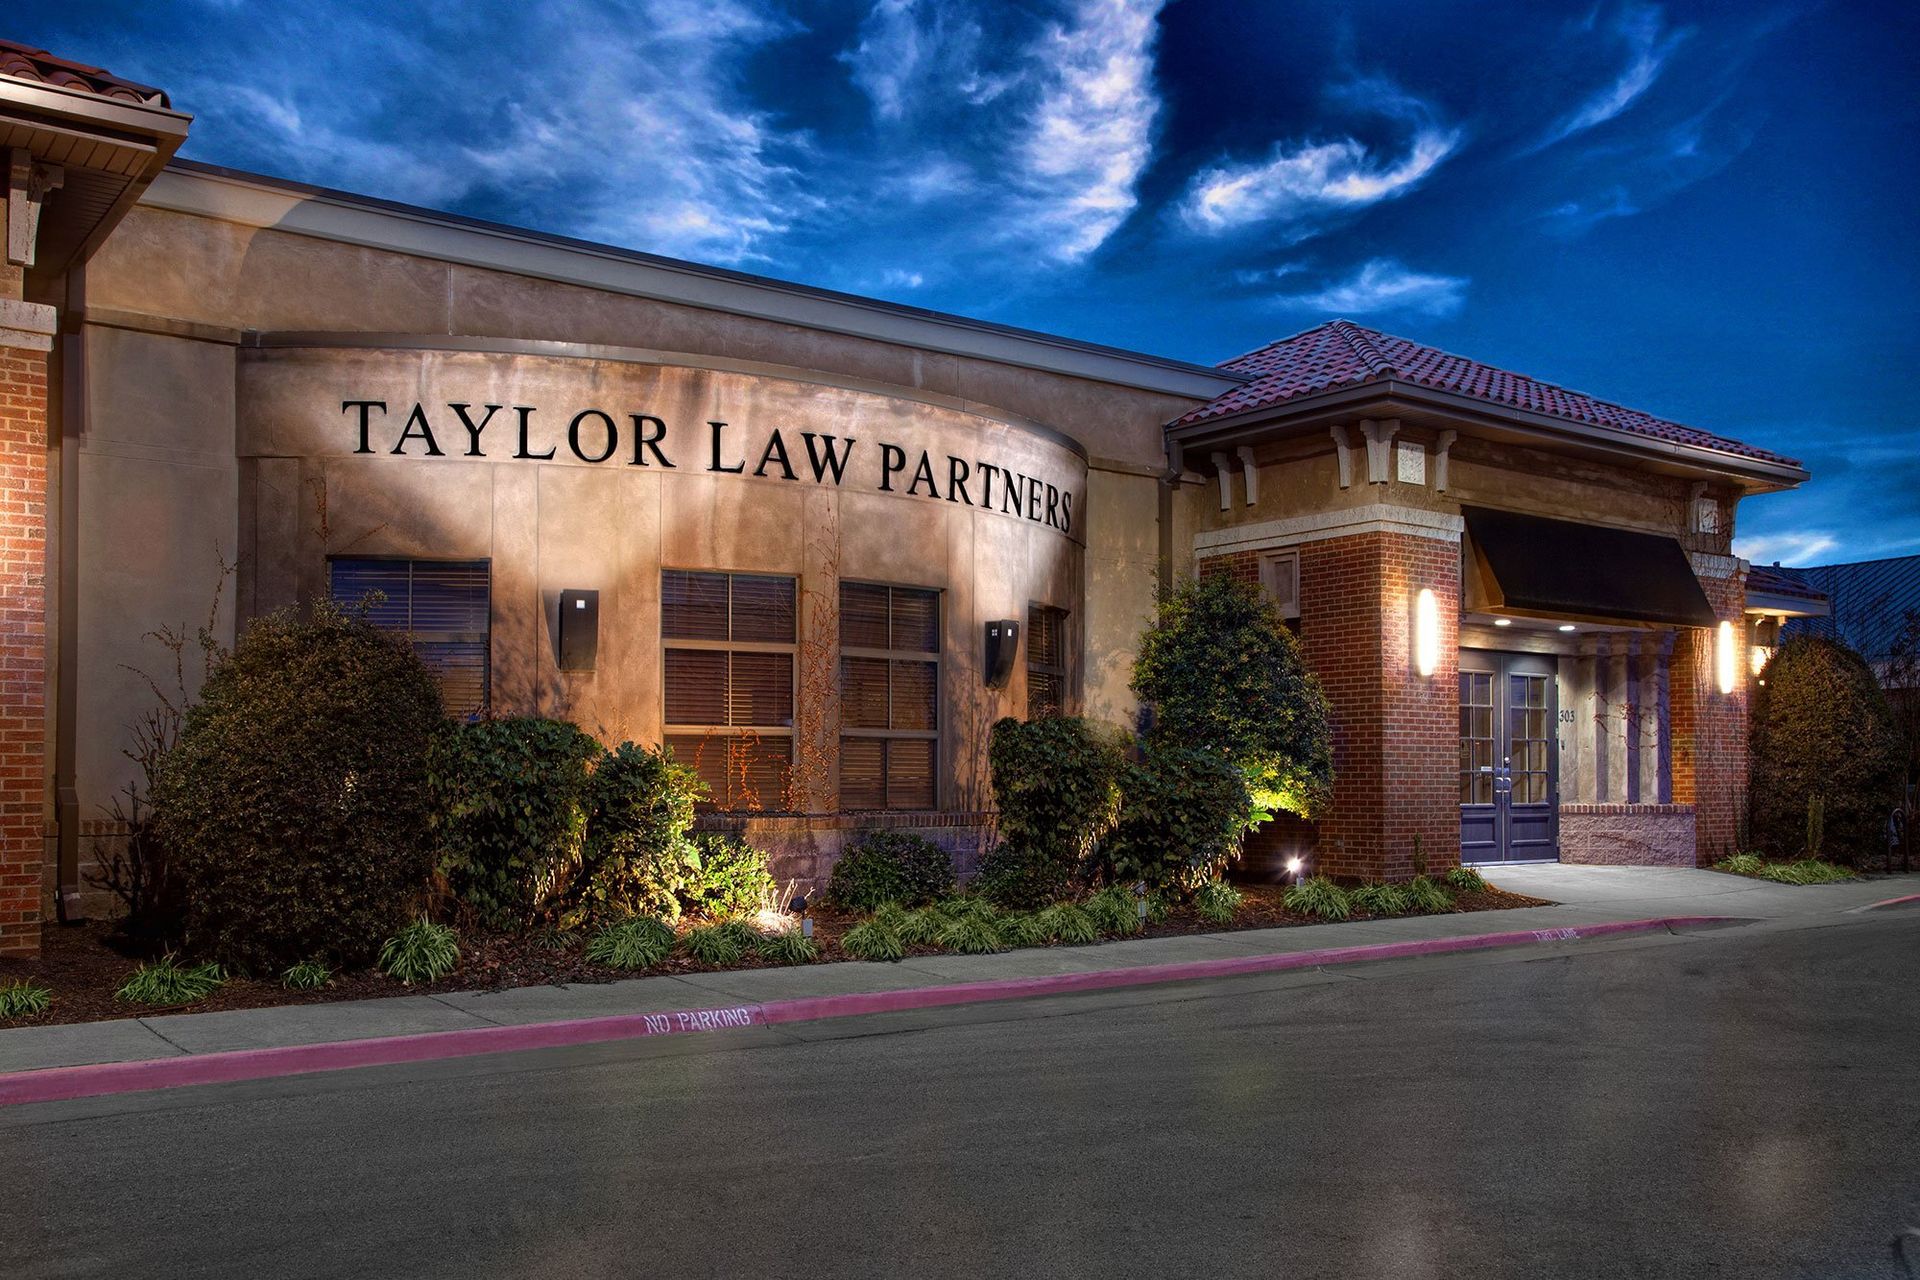 Taylor Law Partners in Fayetteville, Arkansas